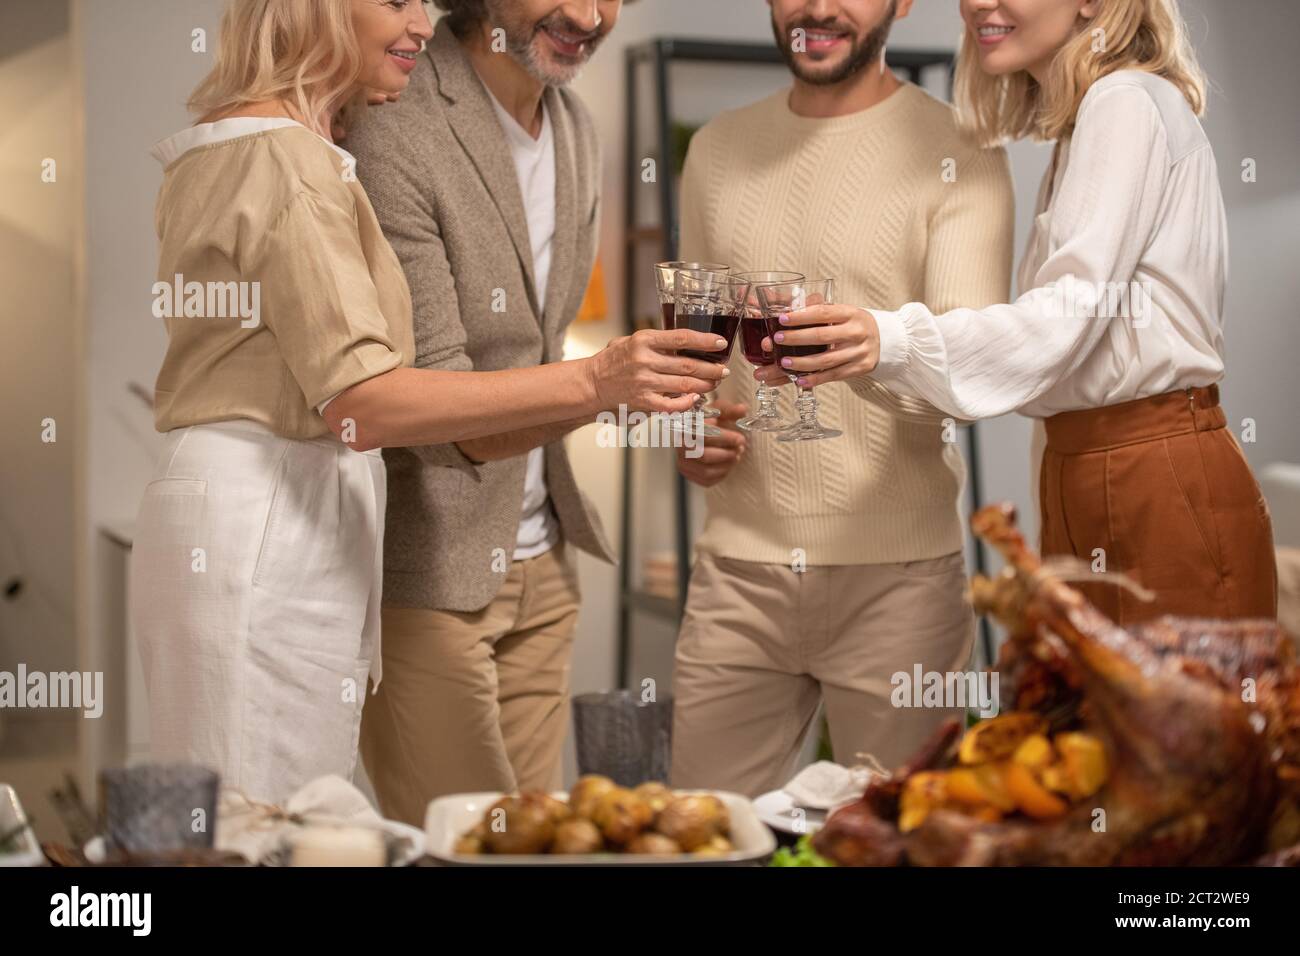 Les mains de quatre membres de la famille souriants en tenue décontractée se clinquant avec verres de vin Banque D'Images